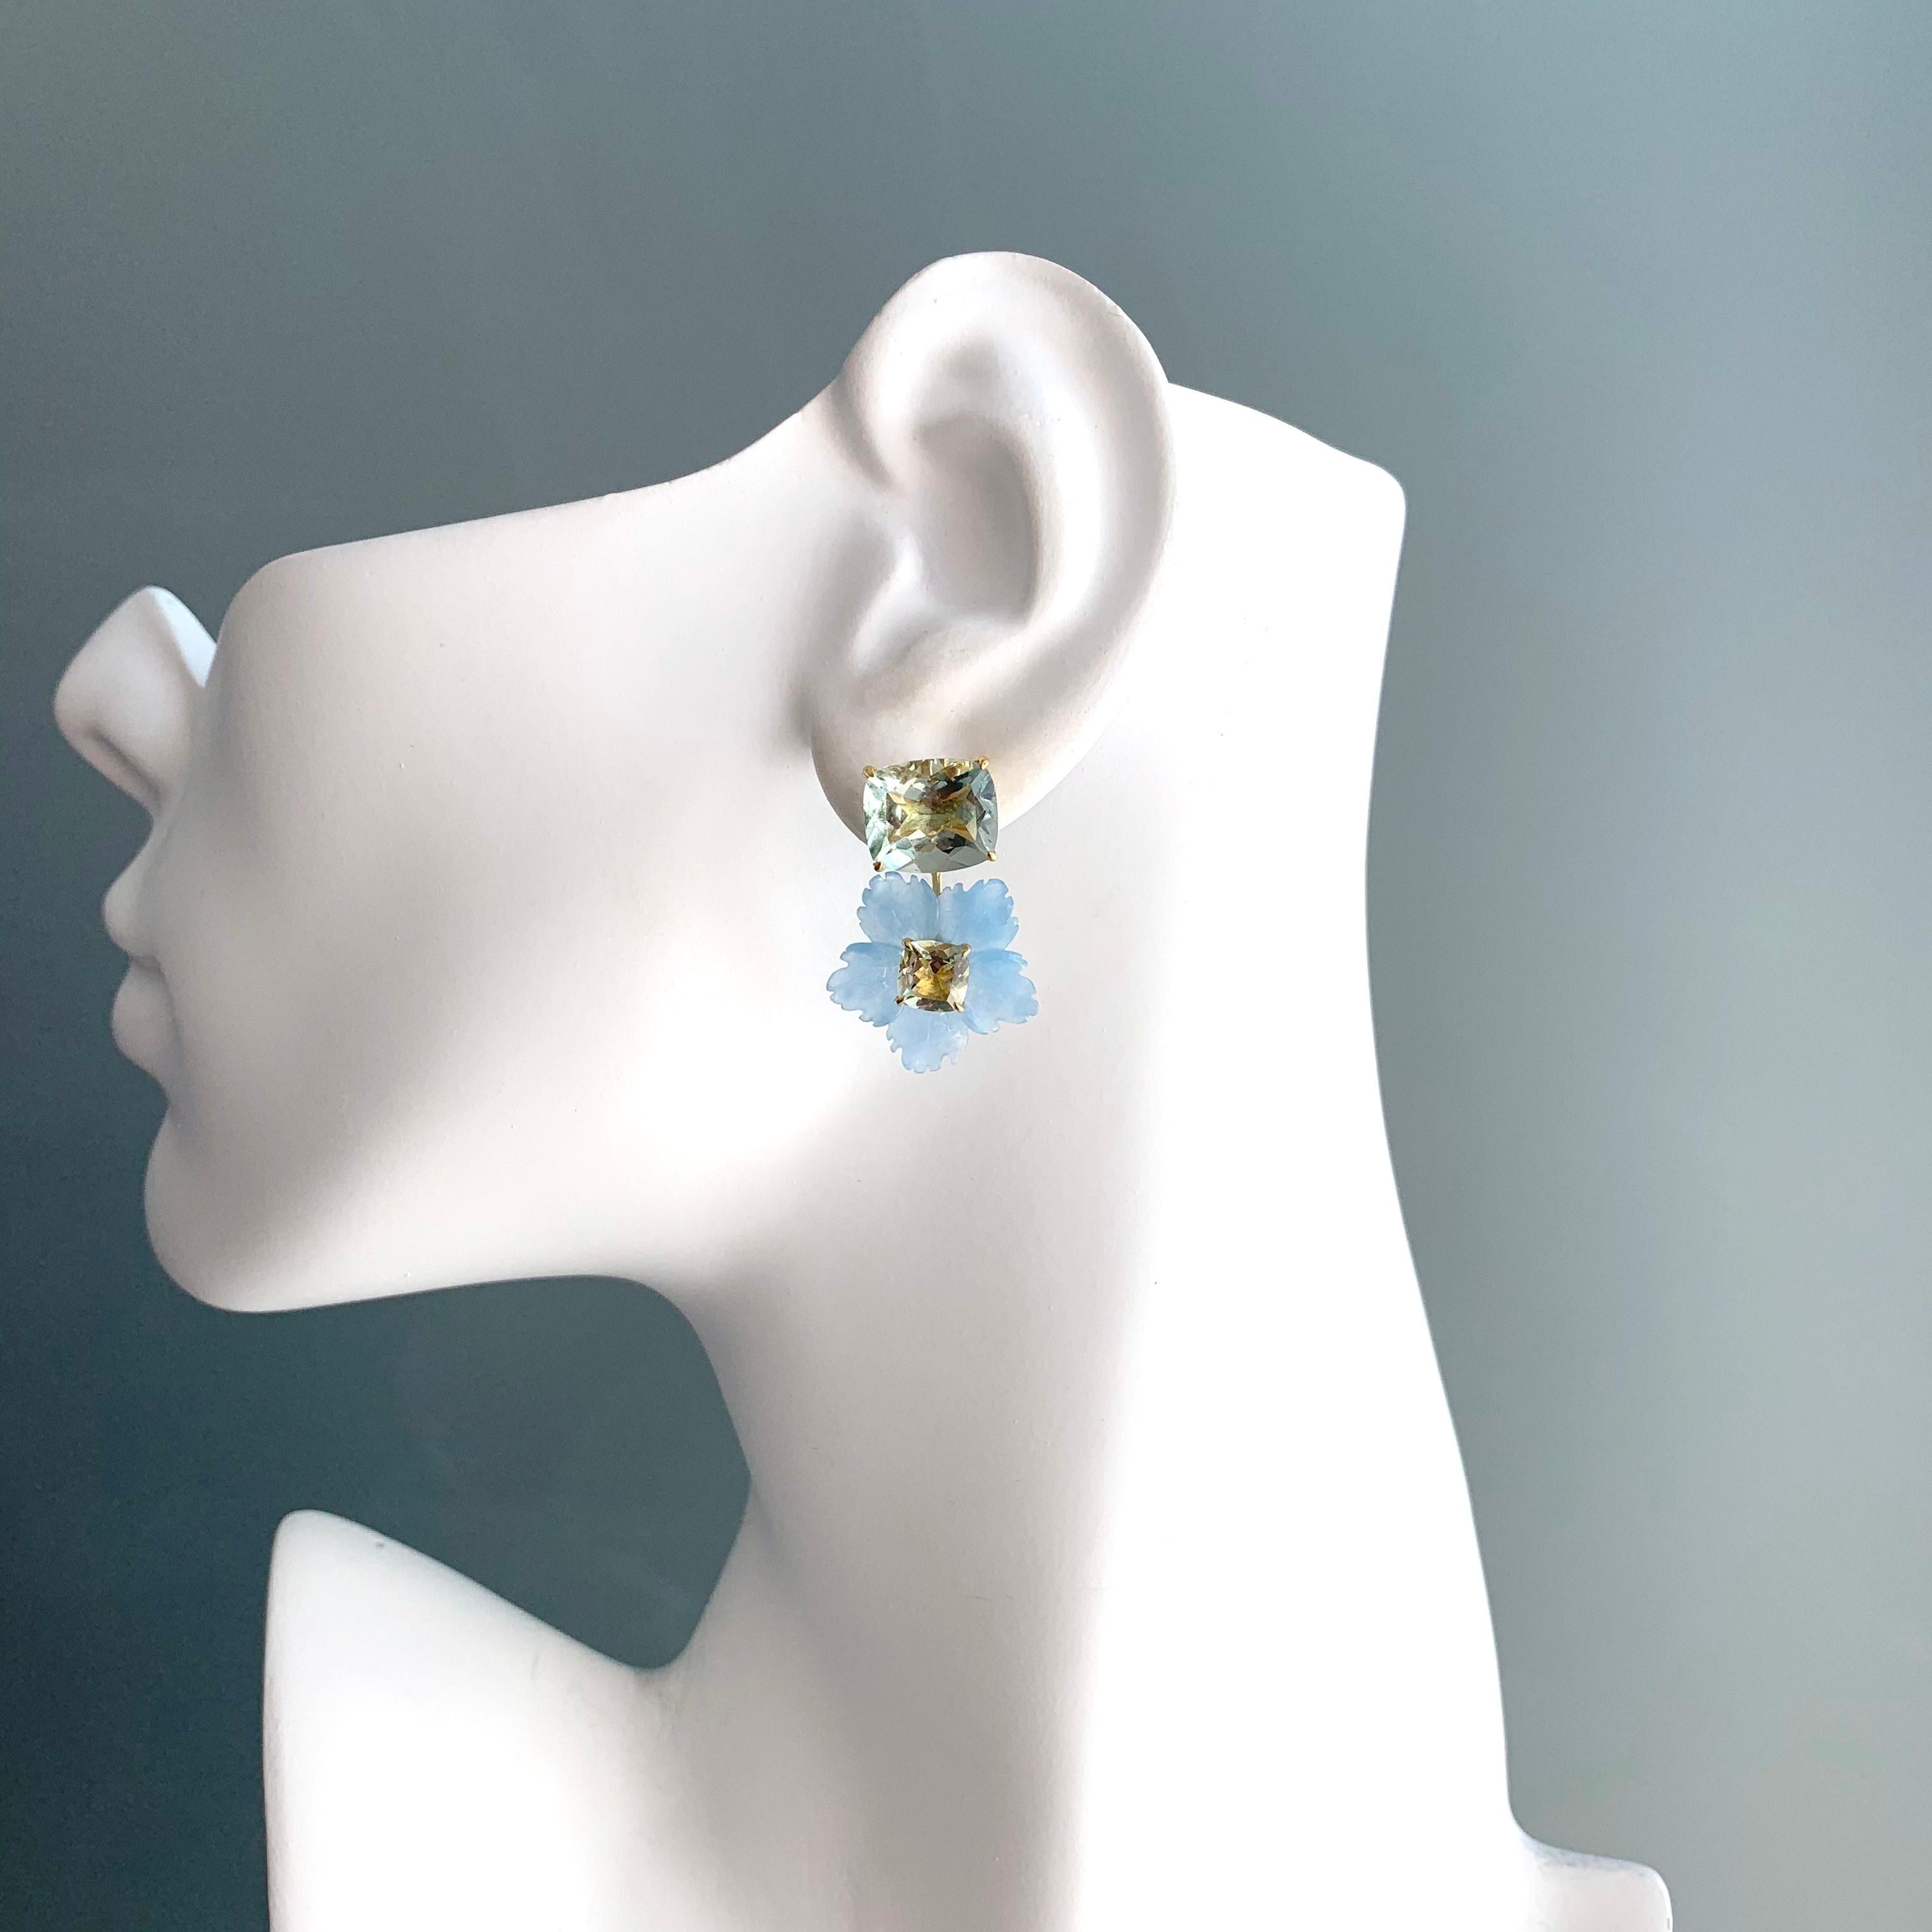 Boucles d'oreilles pendantes en prasiolite taillée en coussin et en quartzite bleu sculpté de Bijoux Num's

Cette superbe paire de boucles d'oreilles présente une magnifique prasiolite 